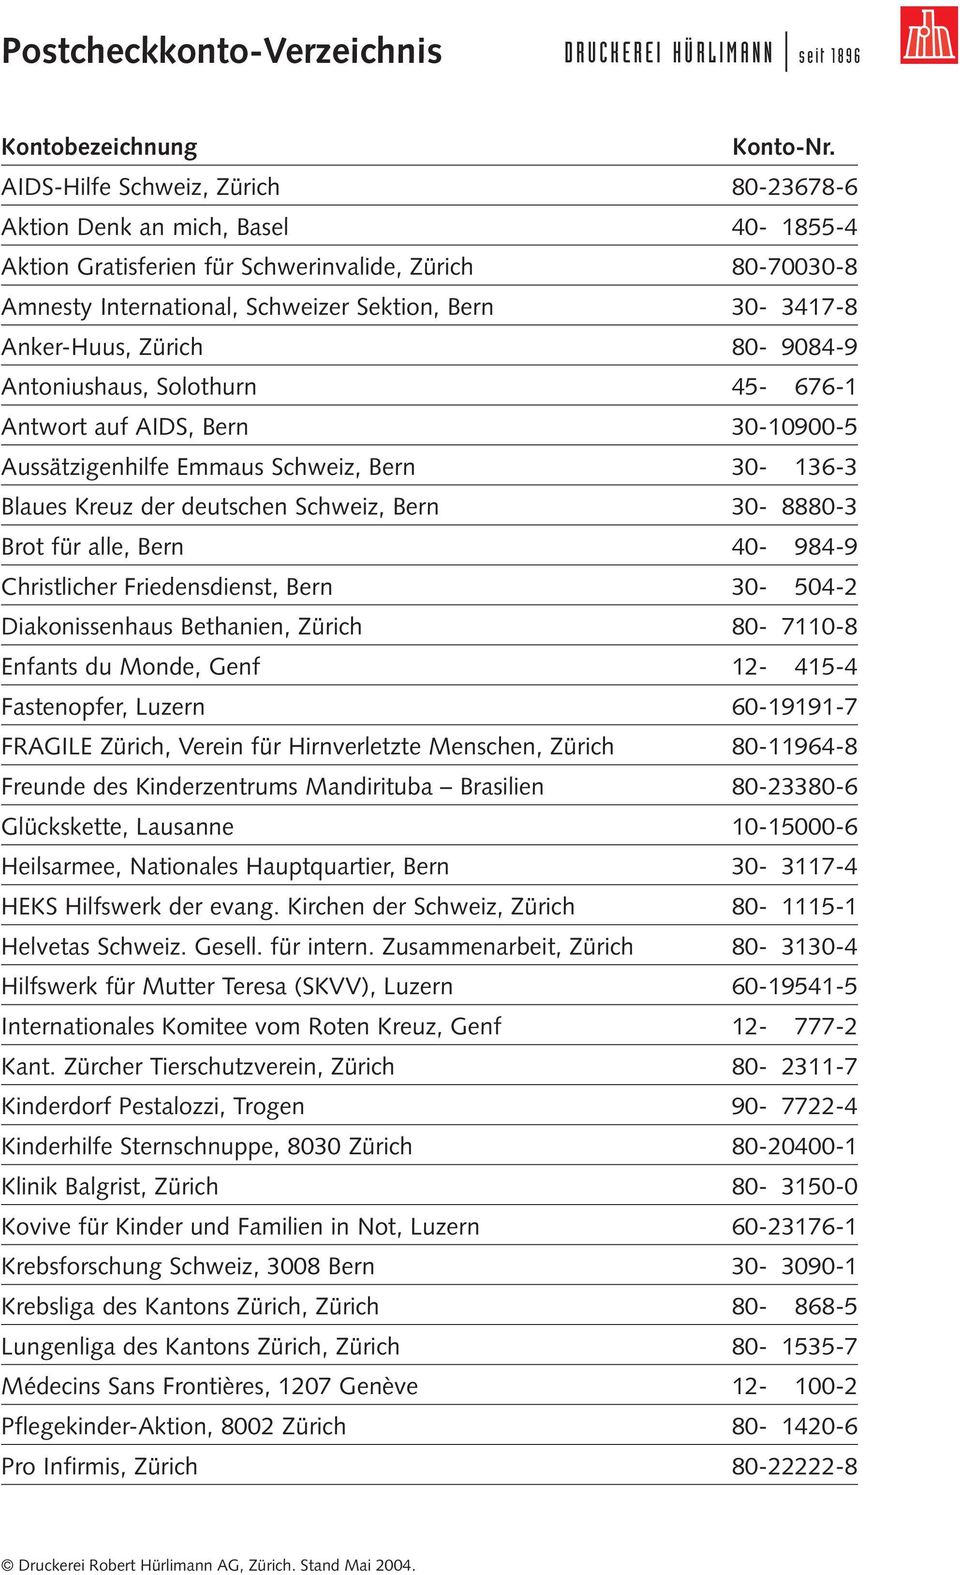 Schweiz, Bern 30-00136-3 Blaues Kreuz der deutschen Schweiz, Bern 30-08880-3 Brot für alle, Bern 40-00984-9 Christlicher Friedensdienst, Bern 30-00504-2 Diakonissenhaus Bethanien, Zürich 80-07110-8